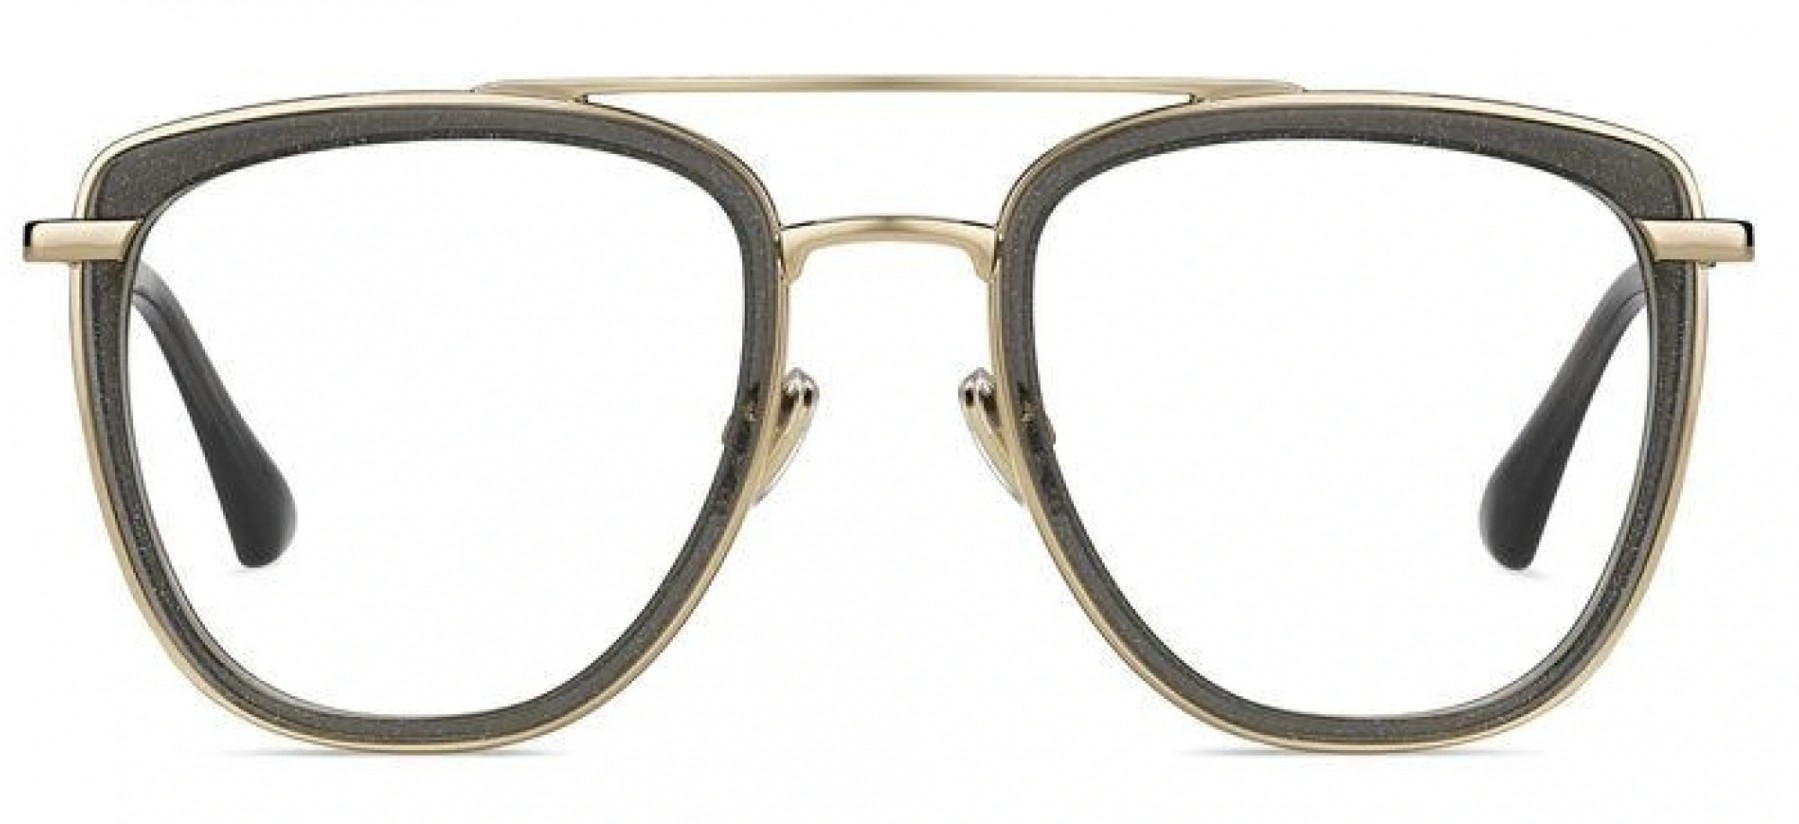 Jimmy Choo 219 Y6U - Oculos de Grau